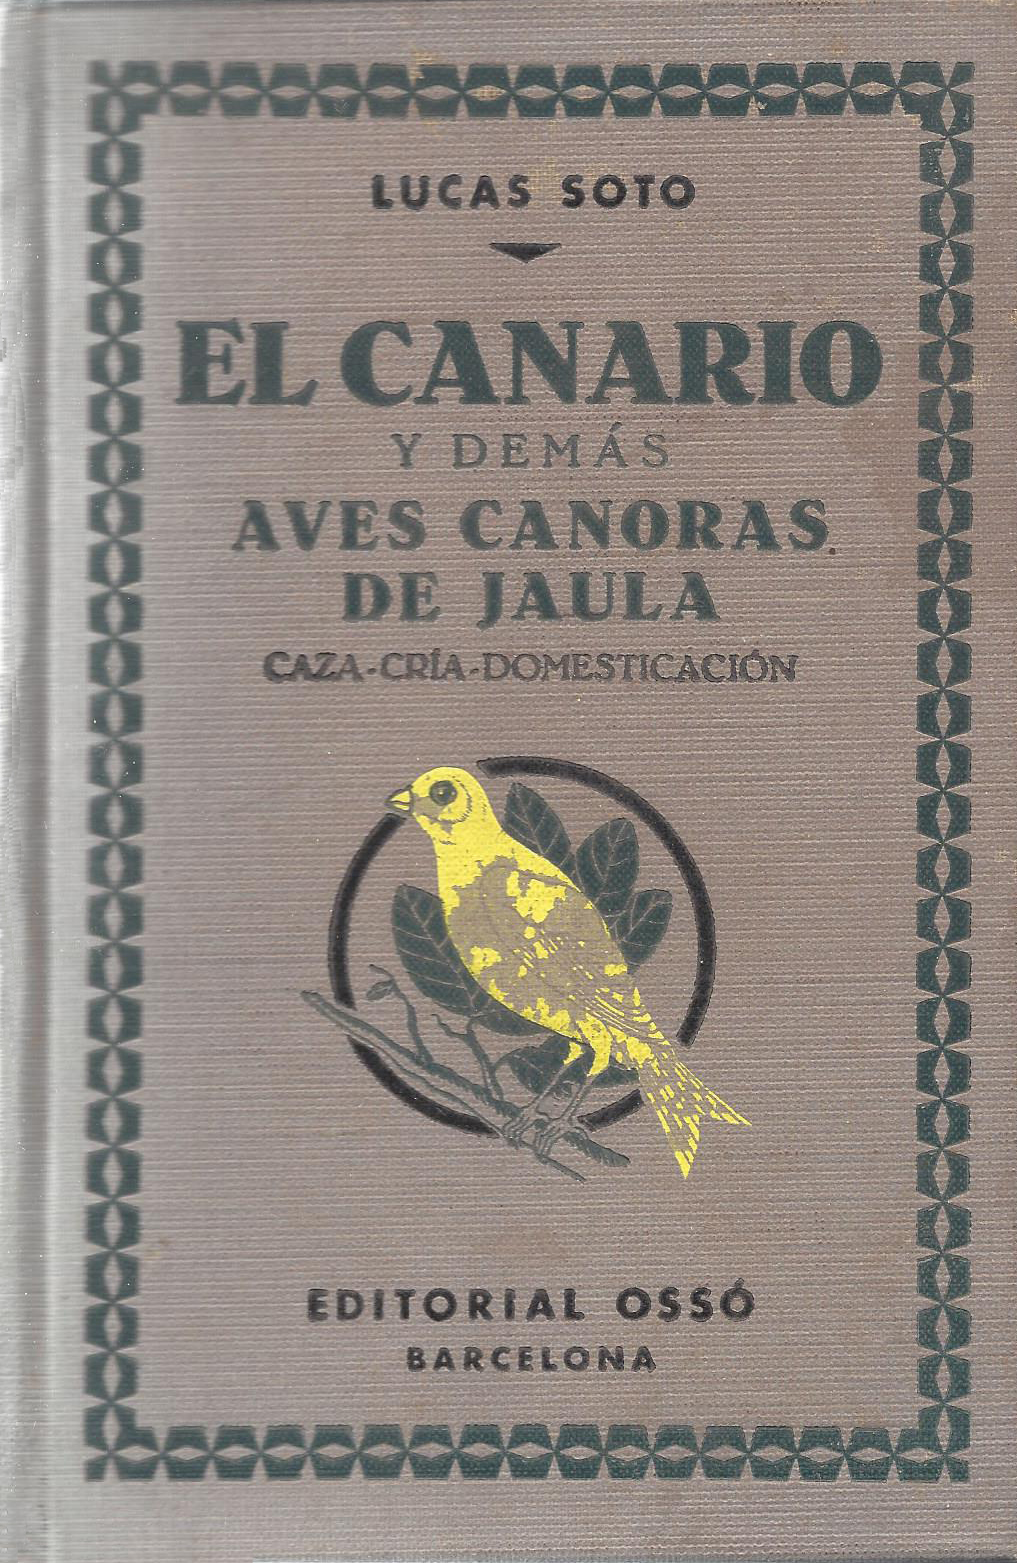 EL CANARIO Y DEMAS AVES CANORAS DE JAULA